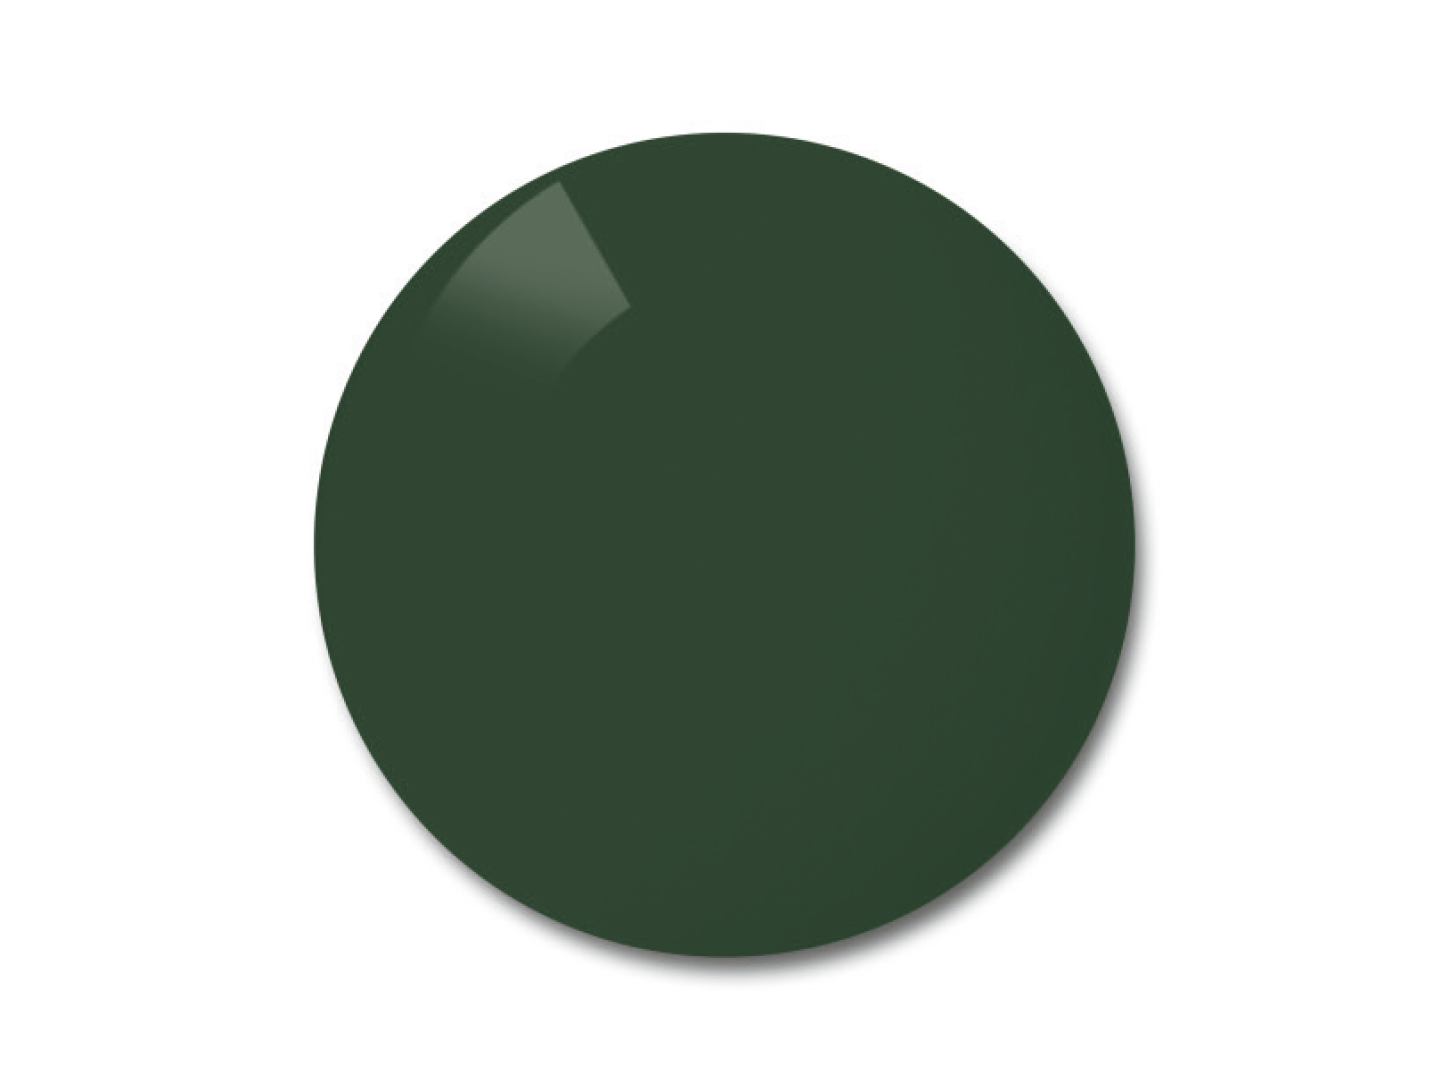 Illustration af ZEISS polariserede glas i farvevalget Pioneer (grågrøn glasfarve) 